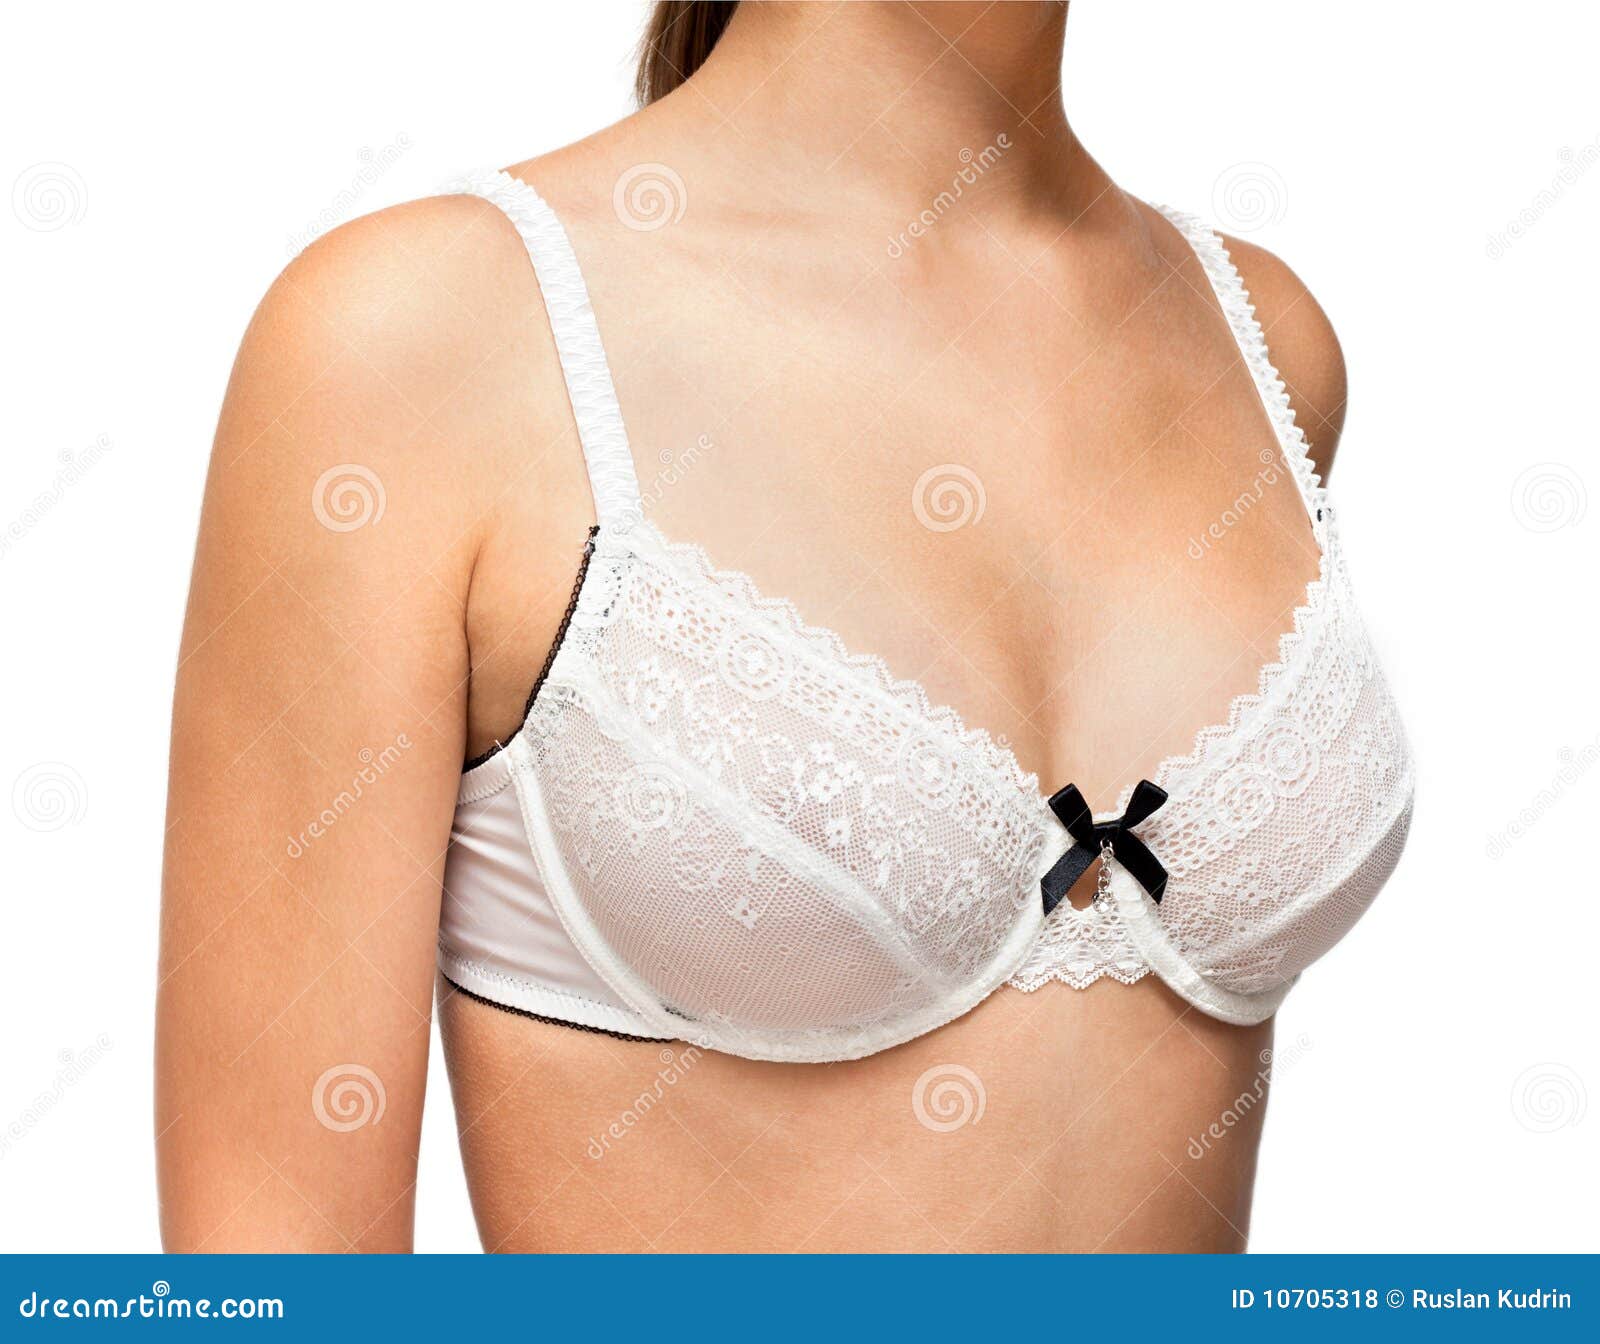 女性胸罩罩杯尺码对照表 罩杯abcdefg怎么分大小图片(3) - 生理知识 - 每天一个健康小知识